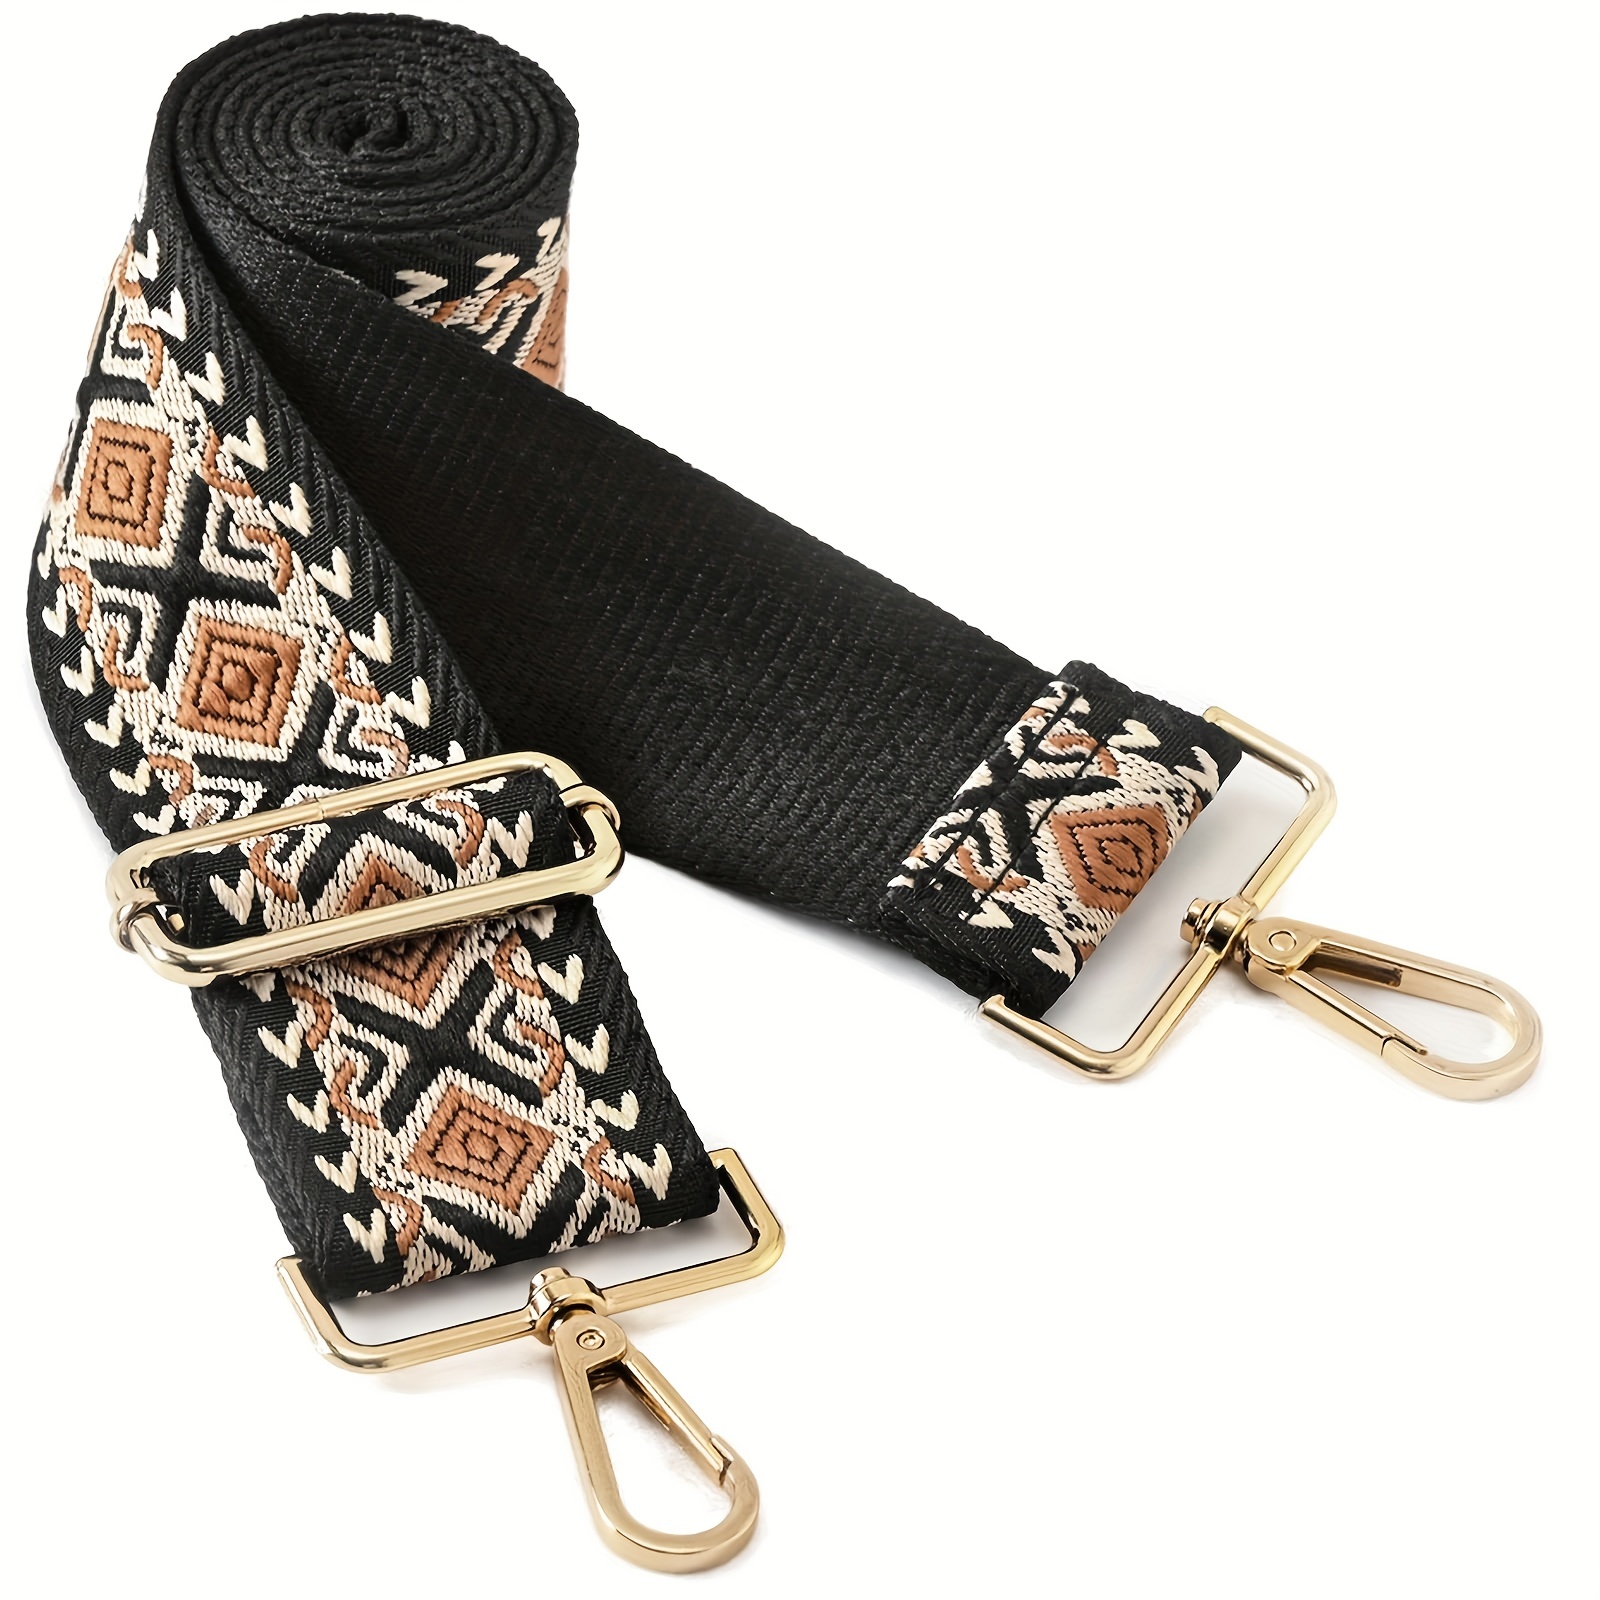 TINBERON Bag Strap For Saddle Bag Handbag Shoulder Bag Straps Canvas Bag  Straps For Crossbody Luxury Designer Bags Accessories